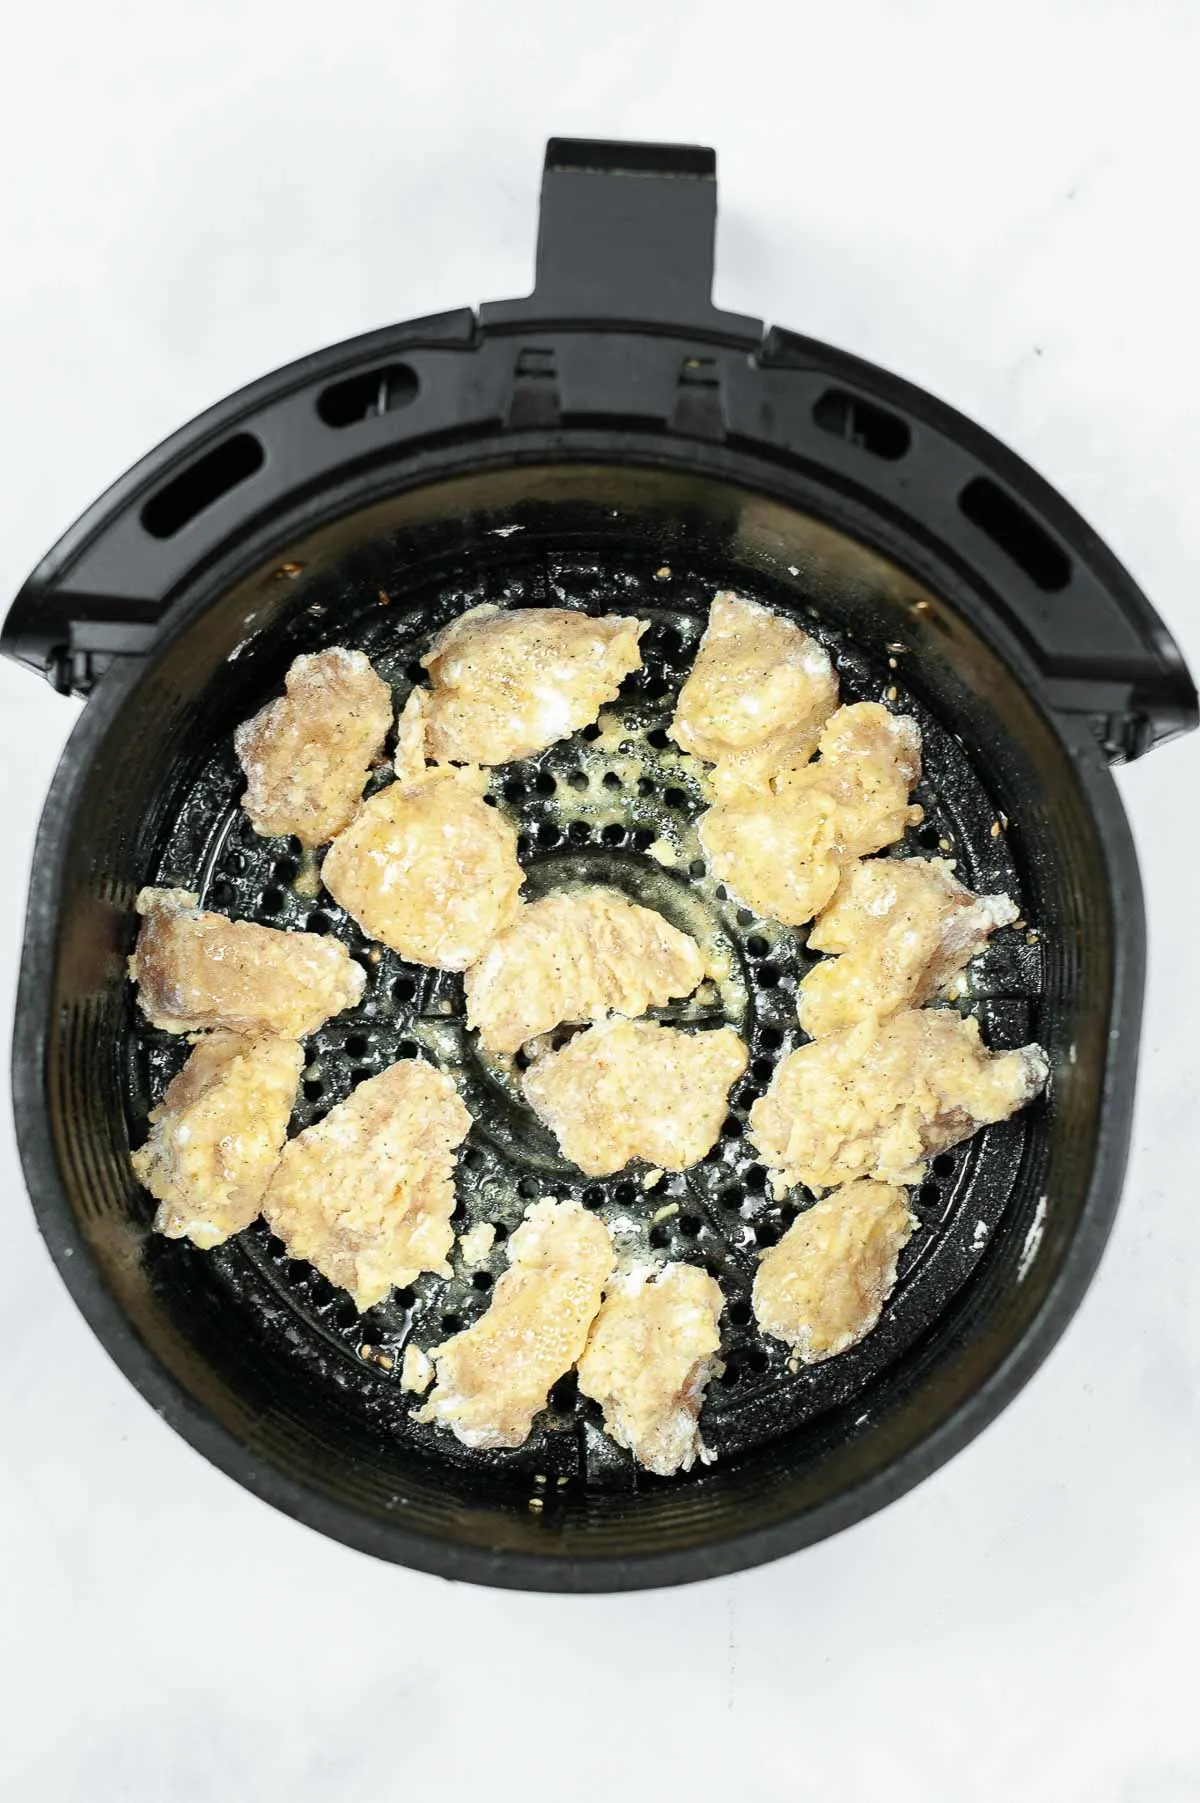 Chicken pieces in an air fryer